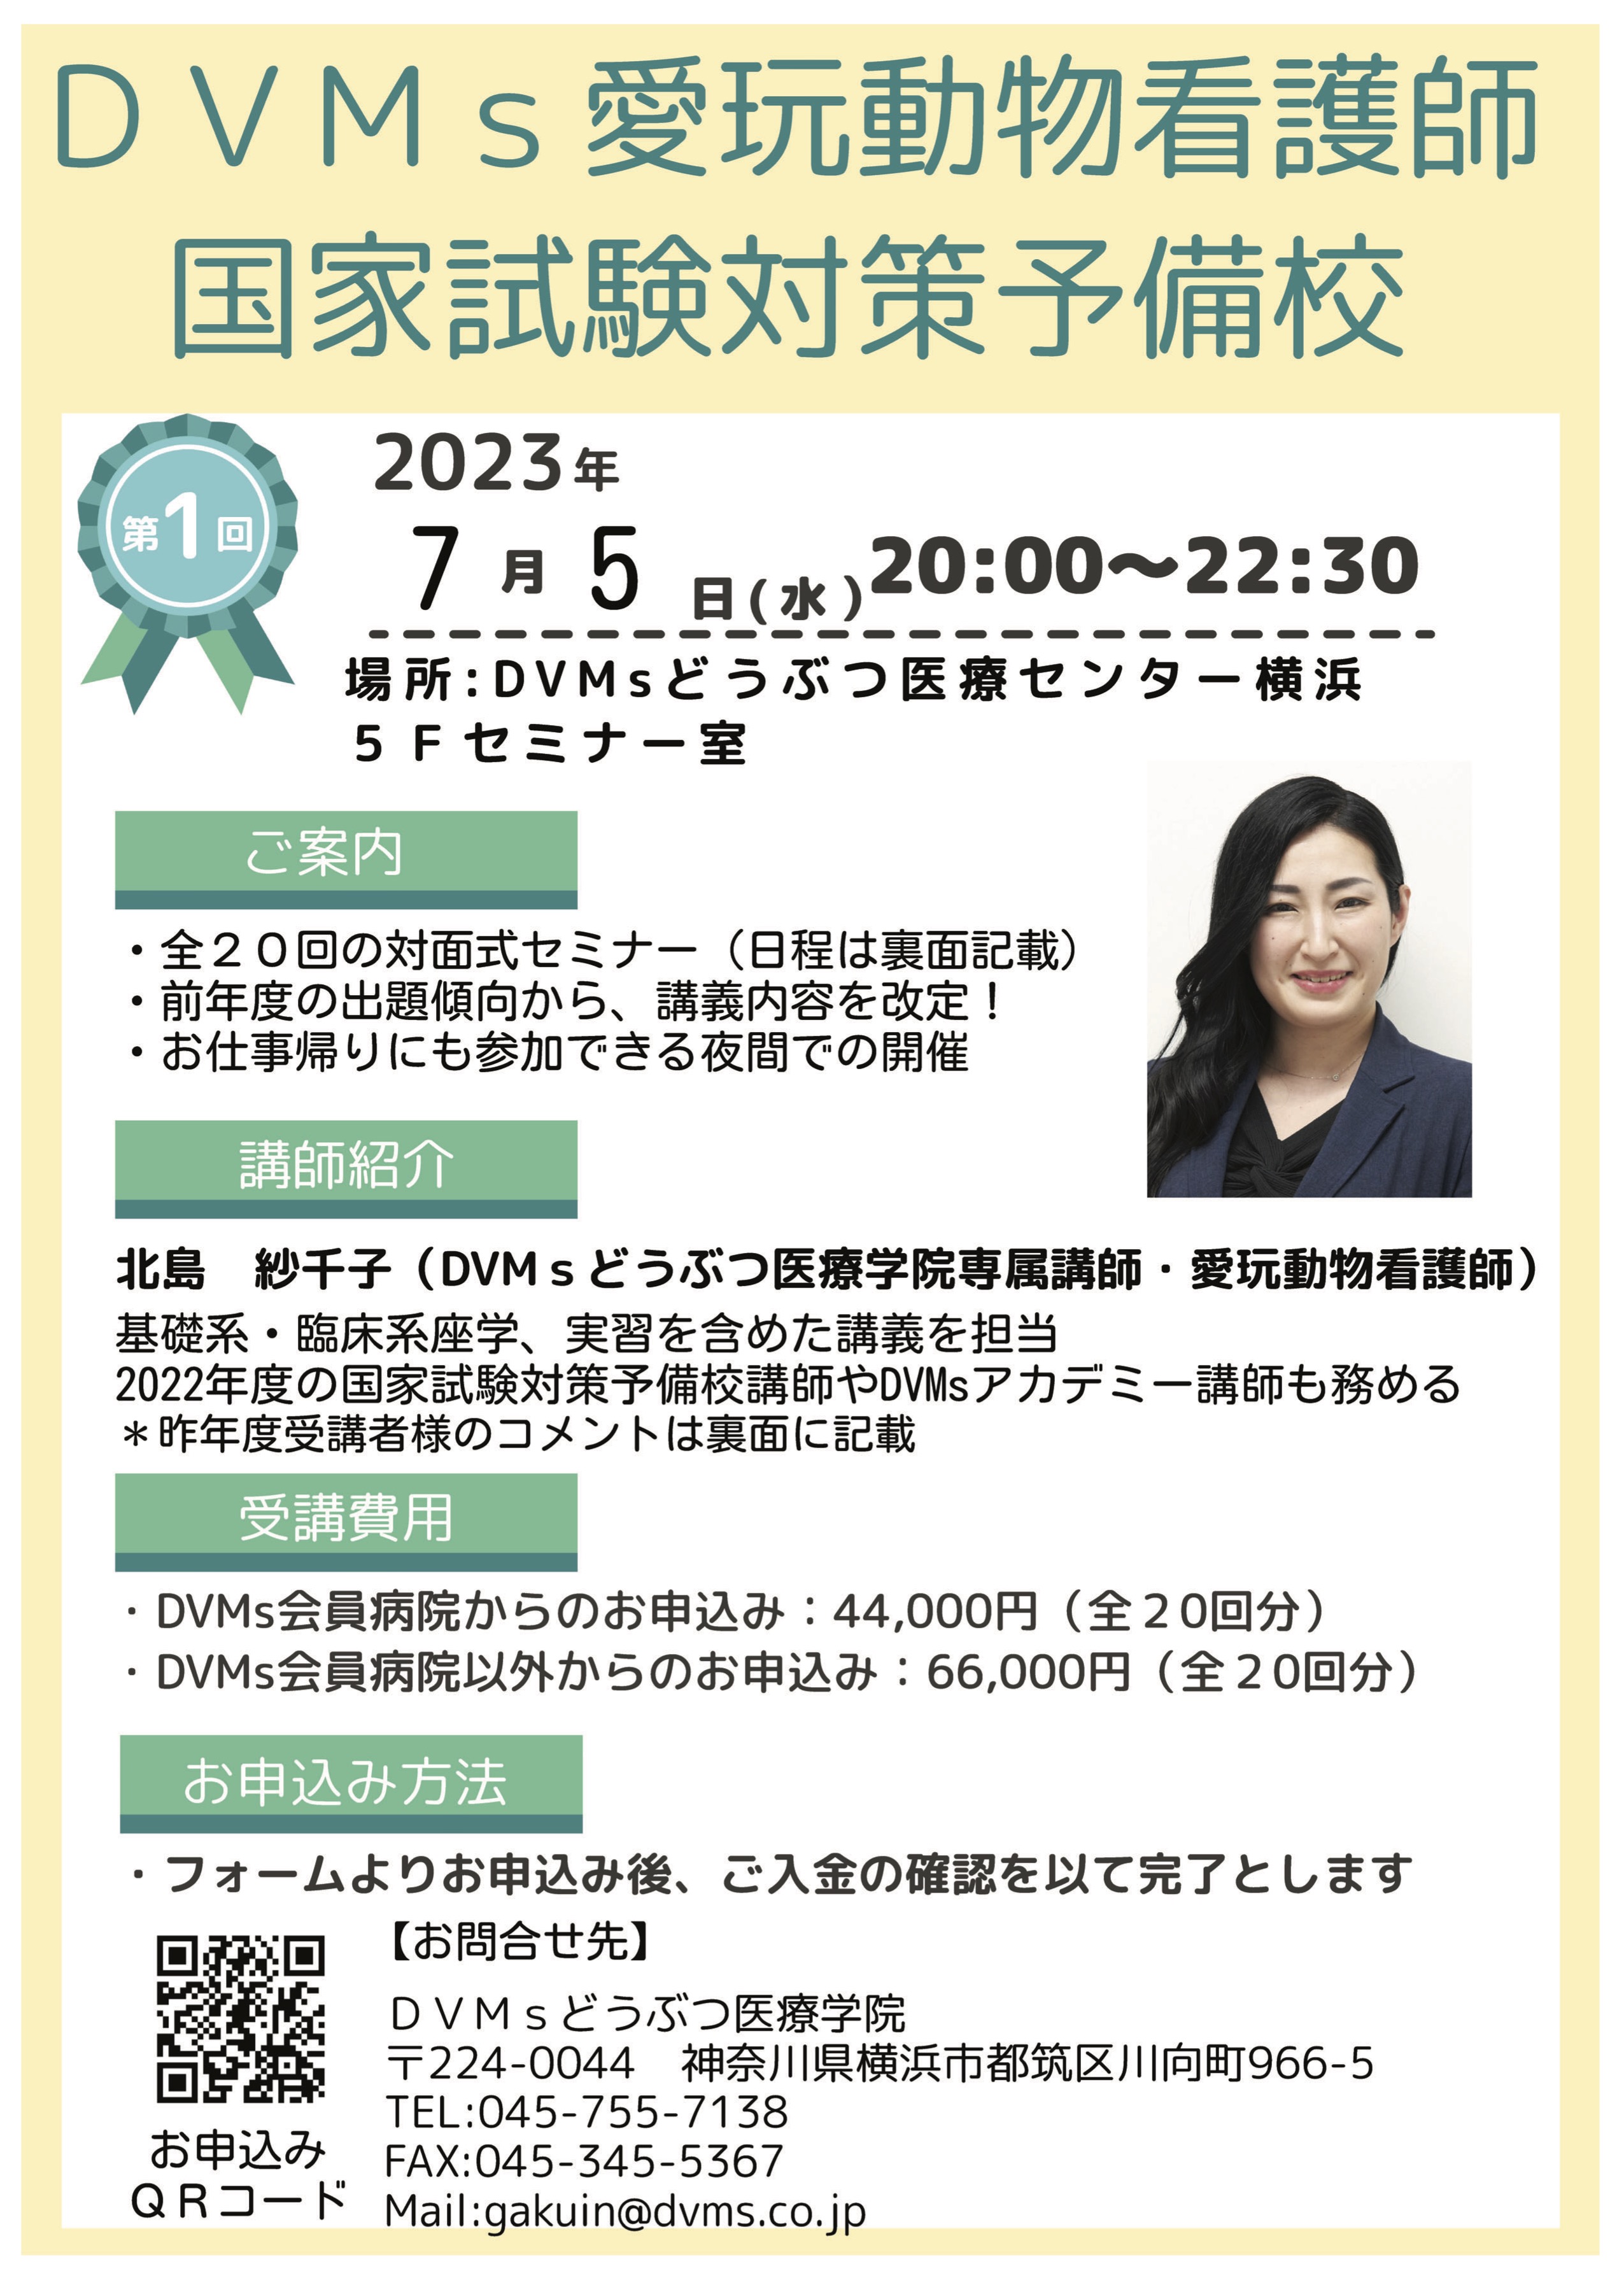 愛玩動物看護師国家試験対策セミナー | DVMsどうぶつ医療センター横浜 